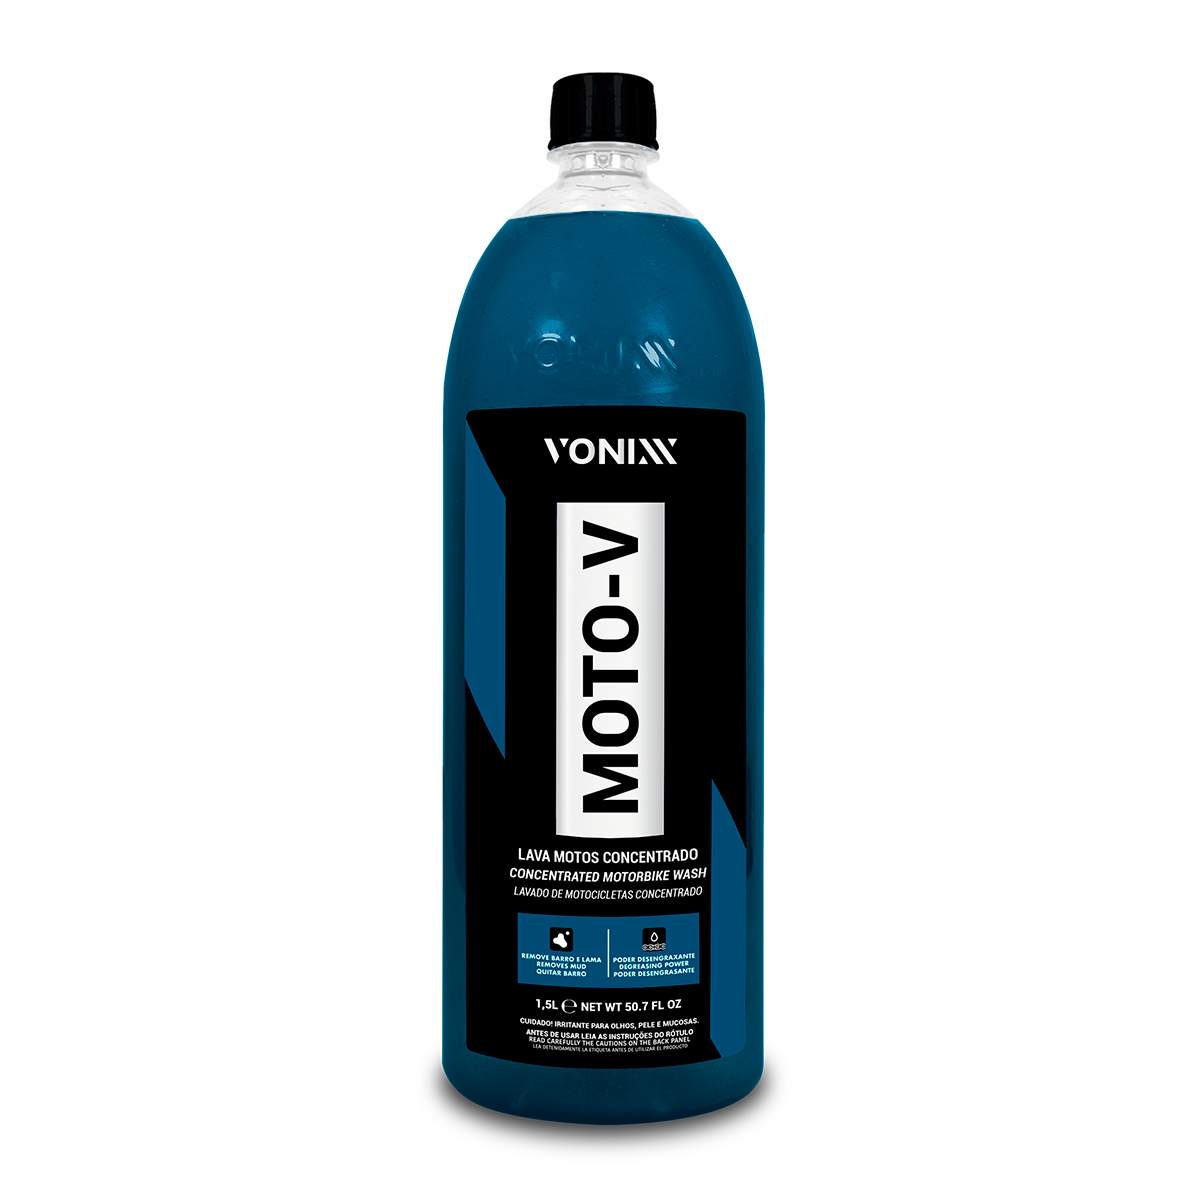 Moto - V Lava Motos Concentrado 1,5L - Vonixx